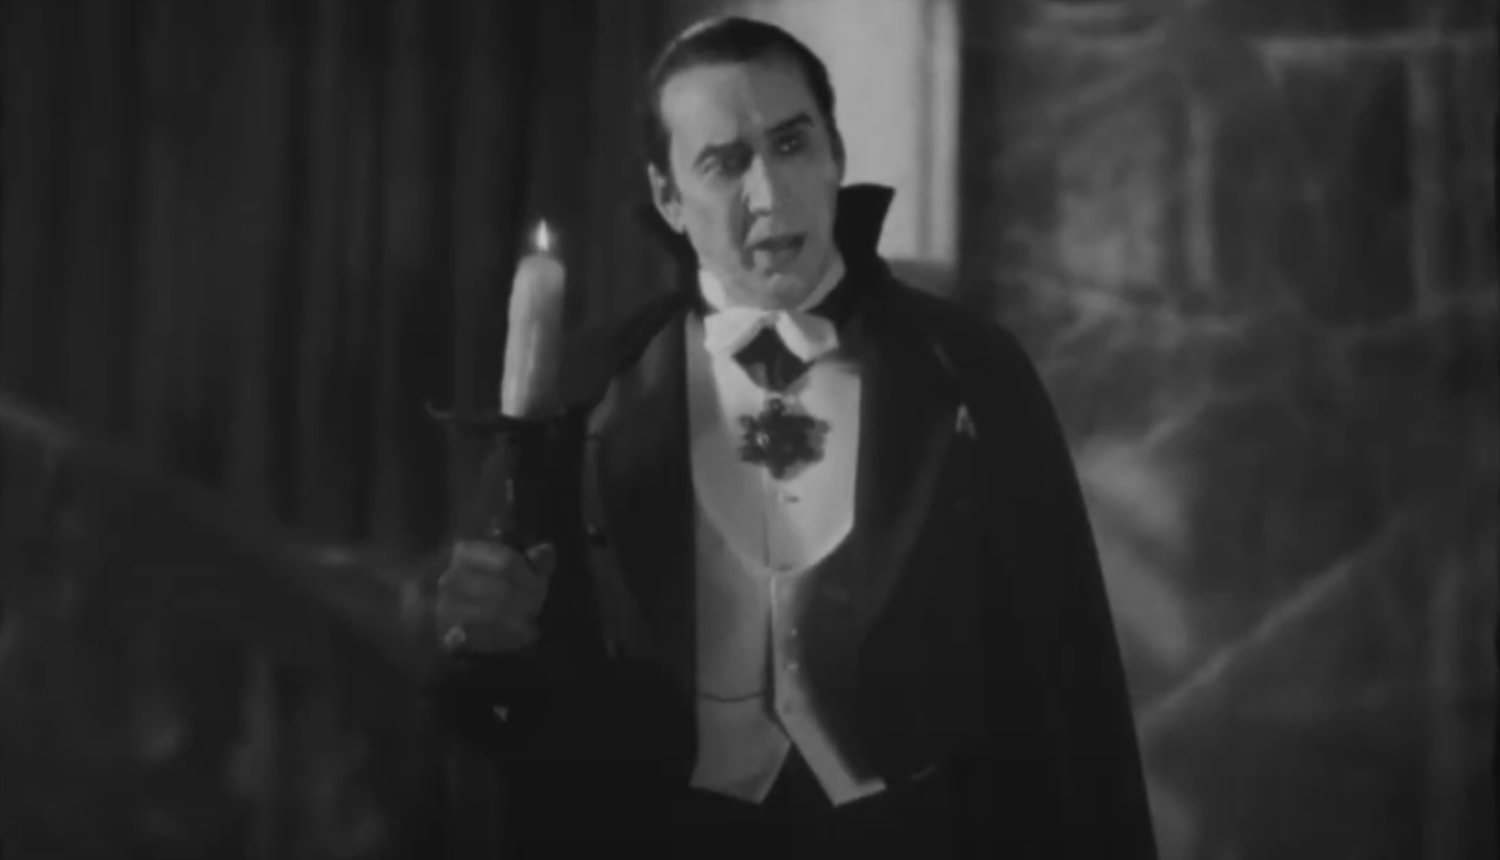 Le réalisateur de RENFIELD dit que le film est une suite directe du film DRACULA de 1931